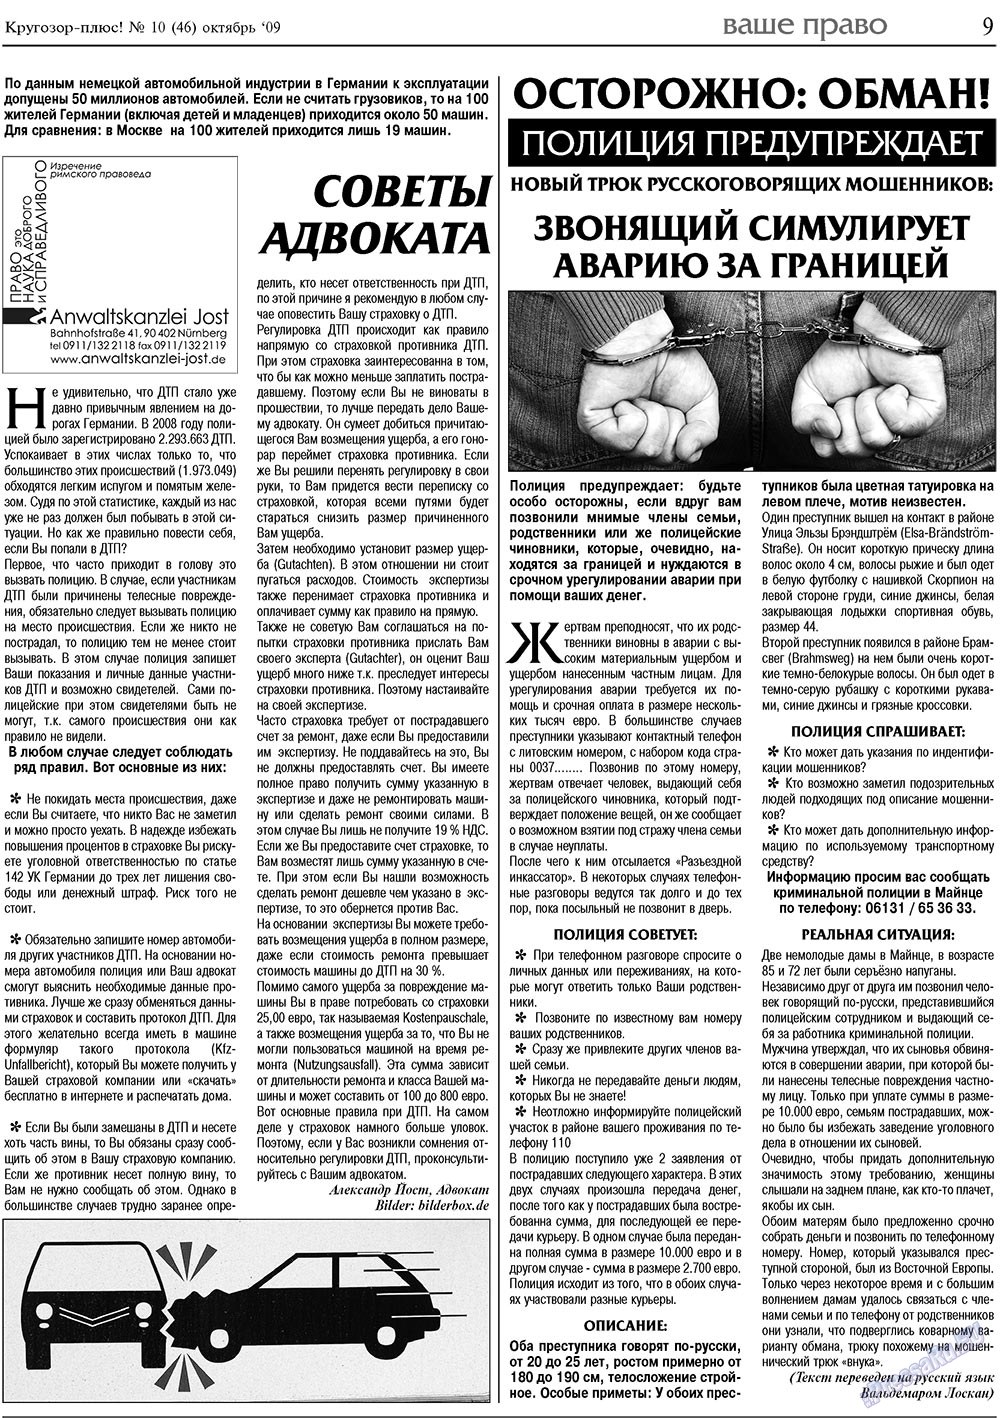 Кругозор плюс!, газета. 2009 №10 стр.9